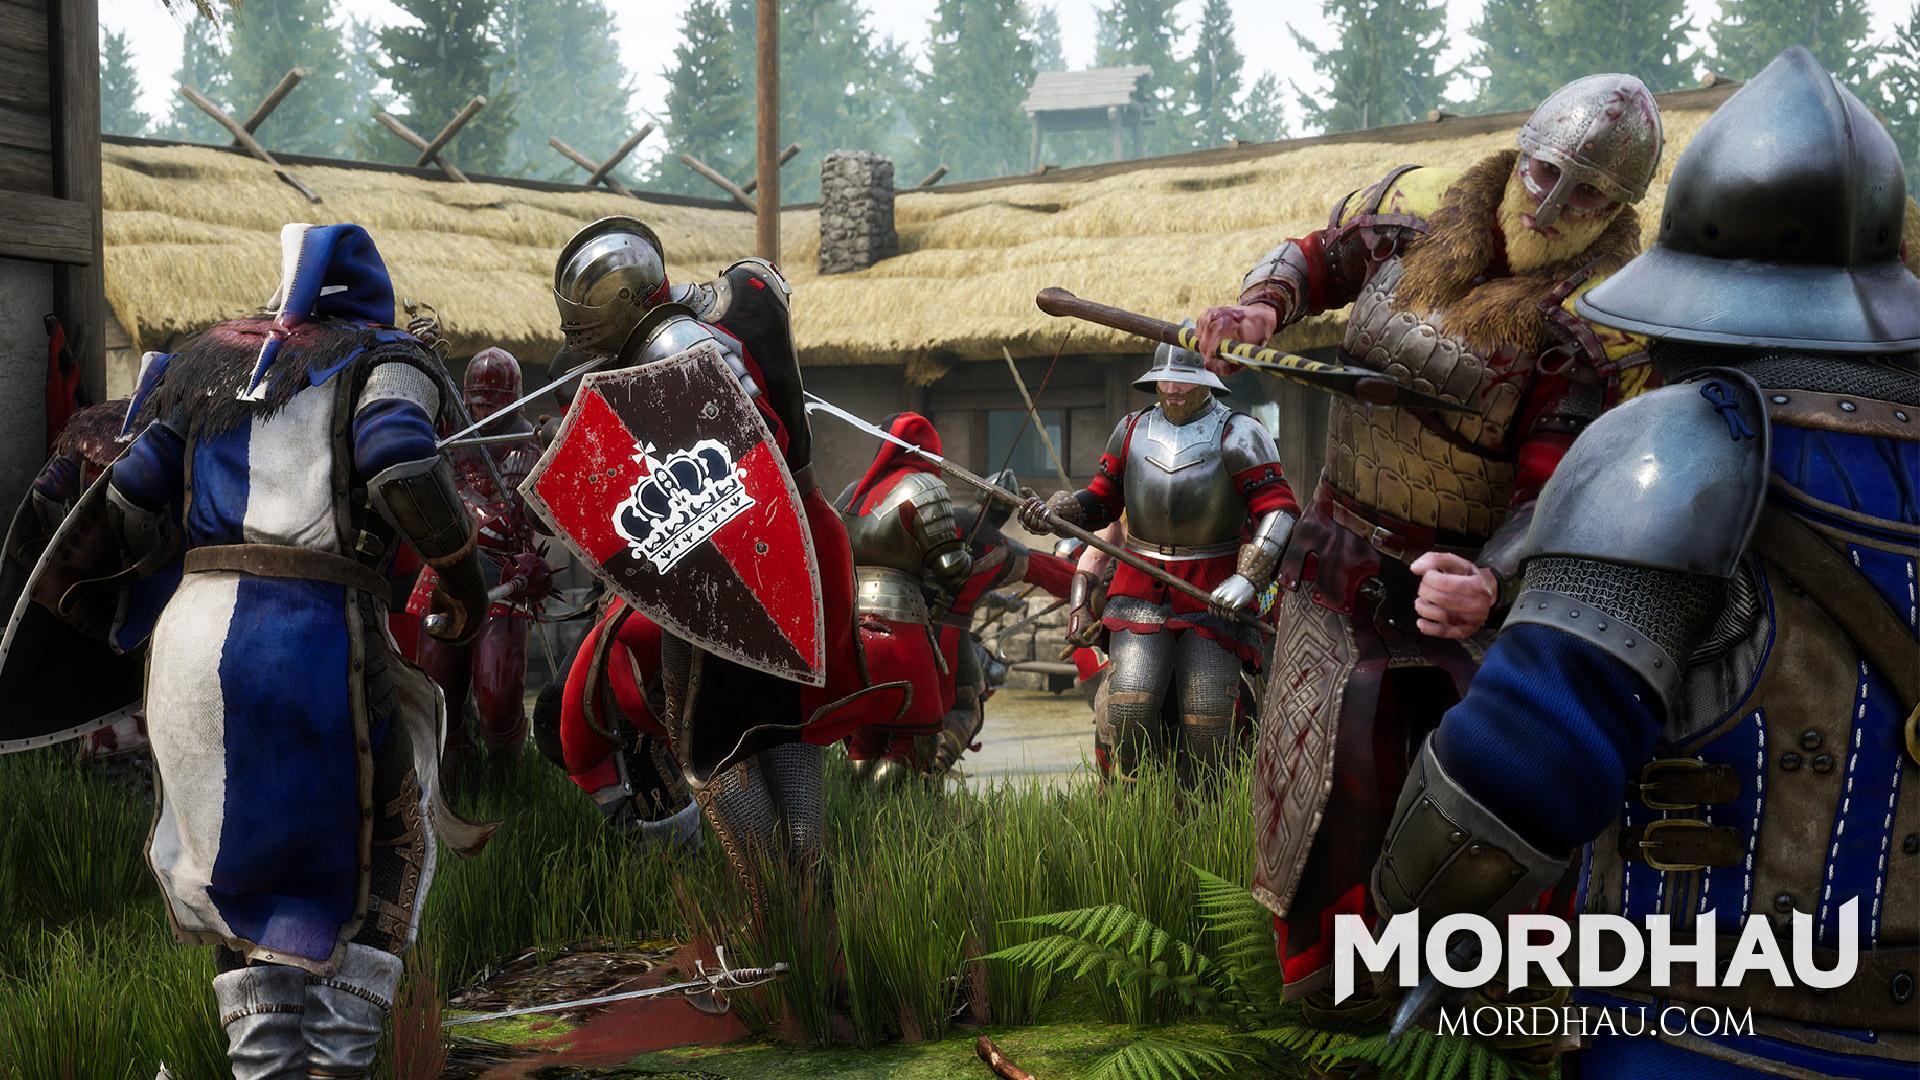 Mordhau: Multiplayer medieval melee game